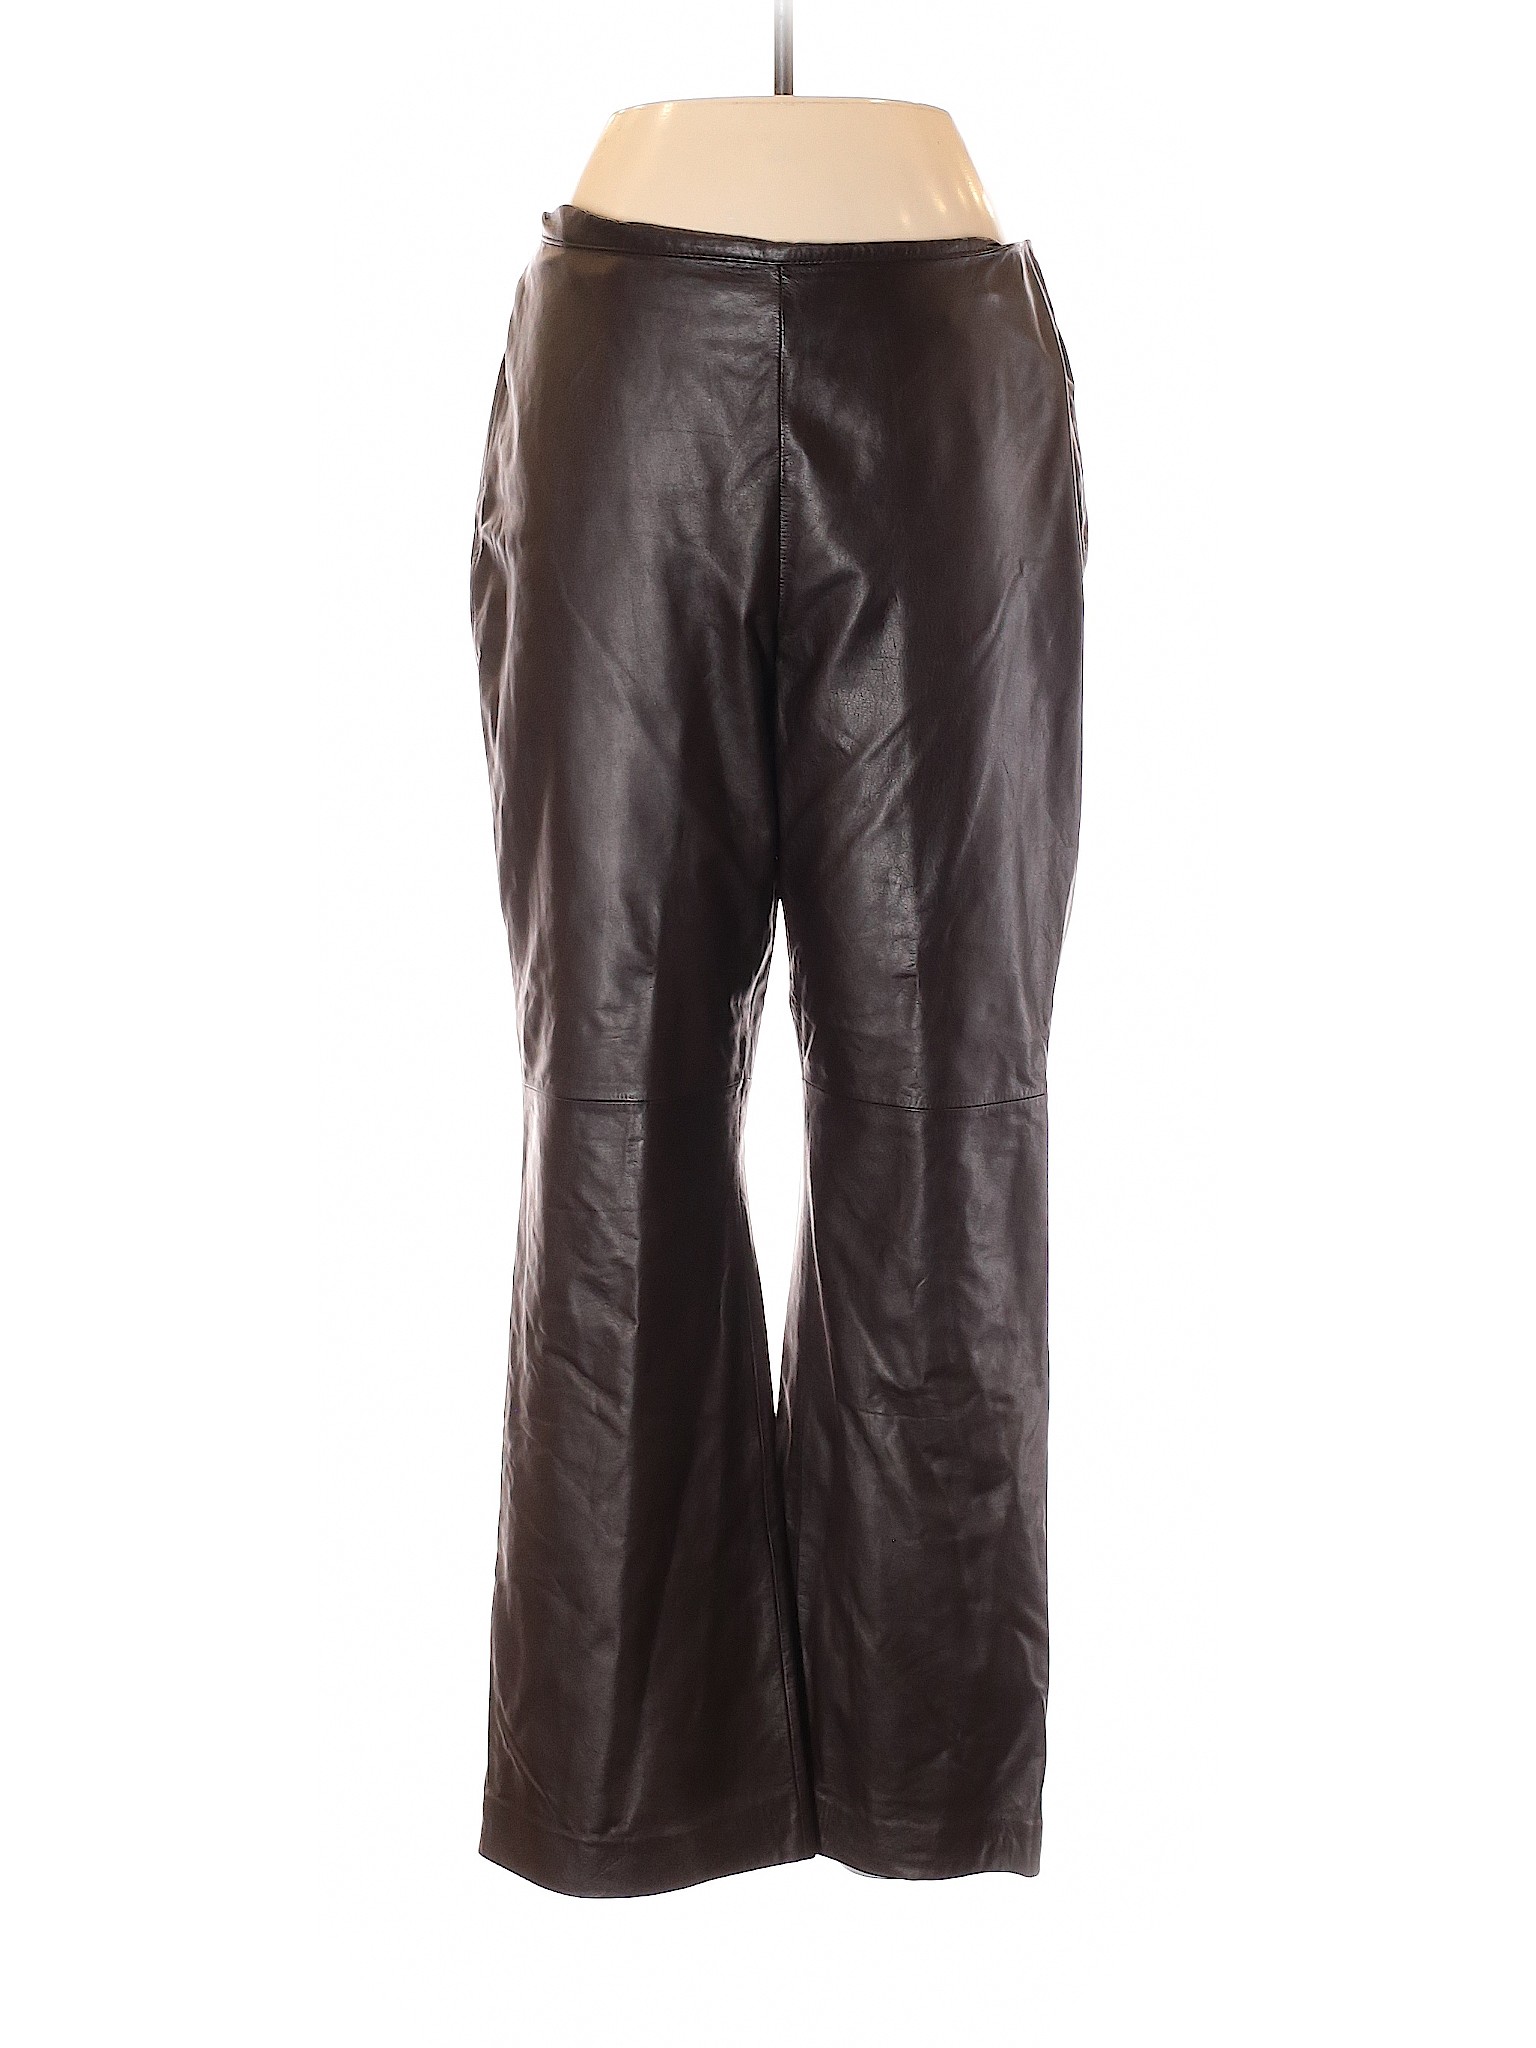 Ann Taylor Women Brown Leather Pants 12 | eBay